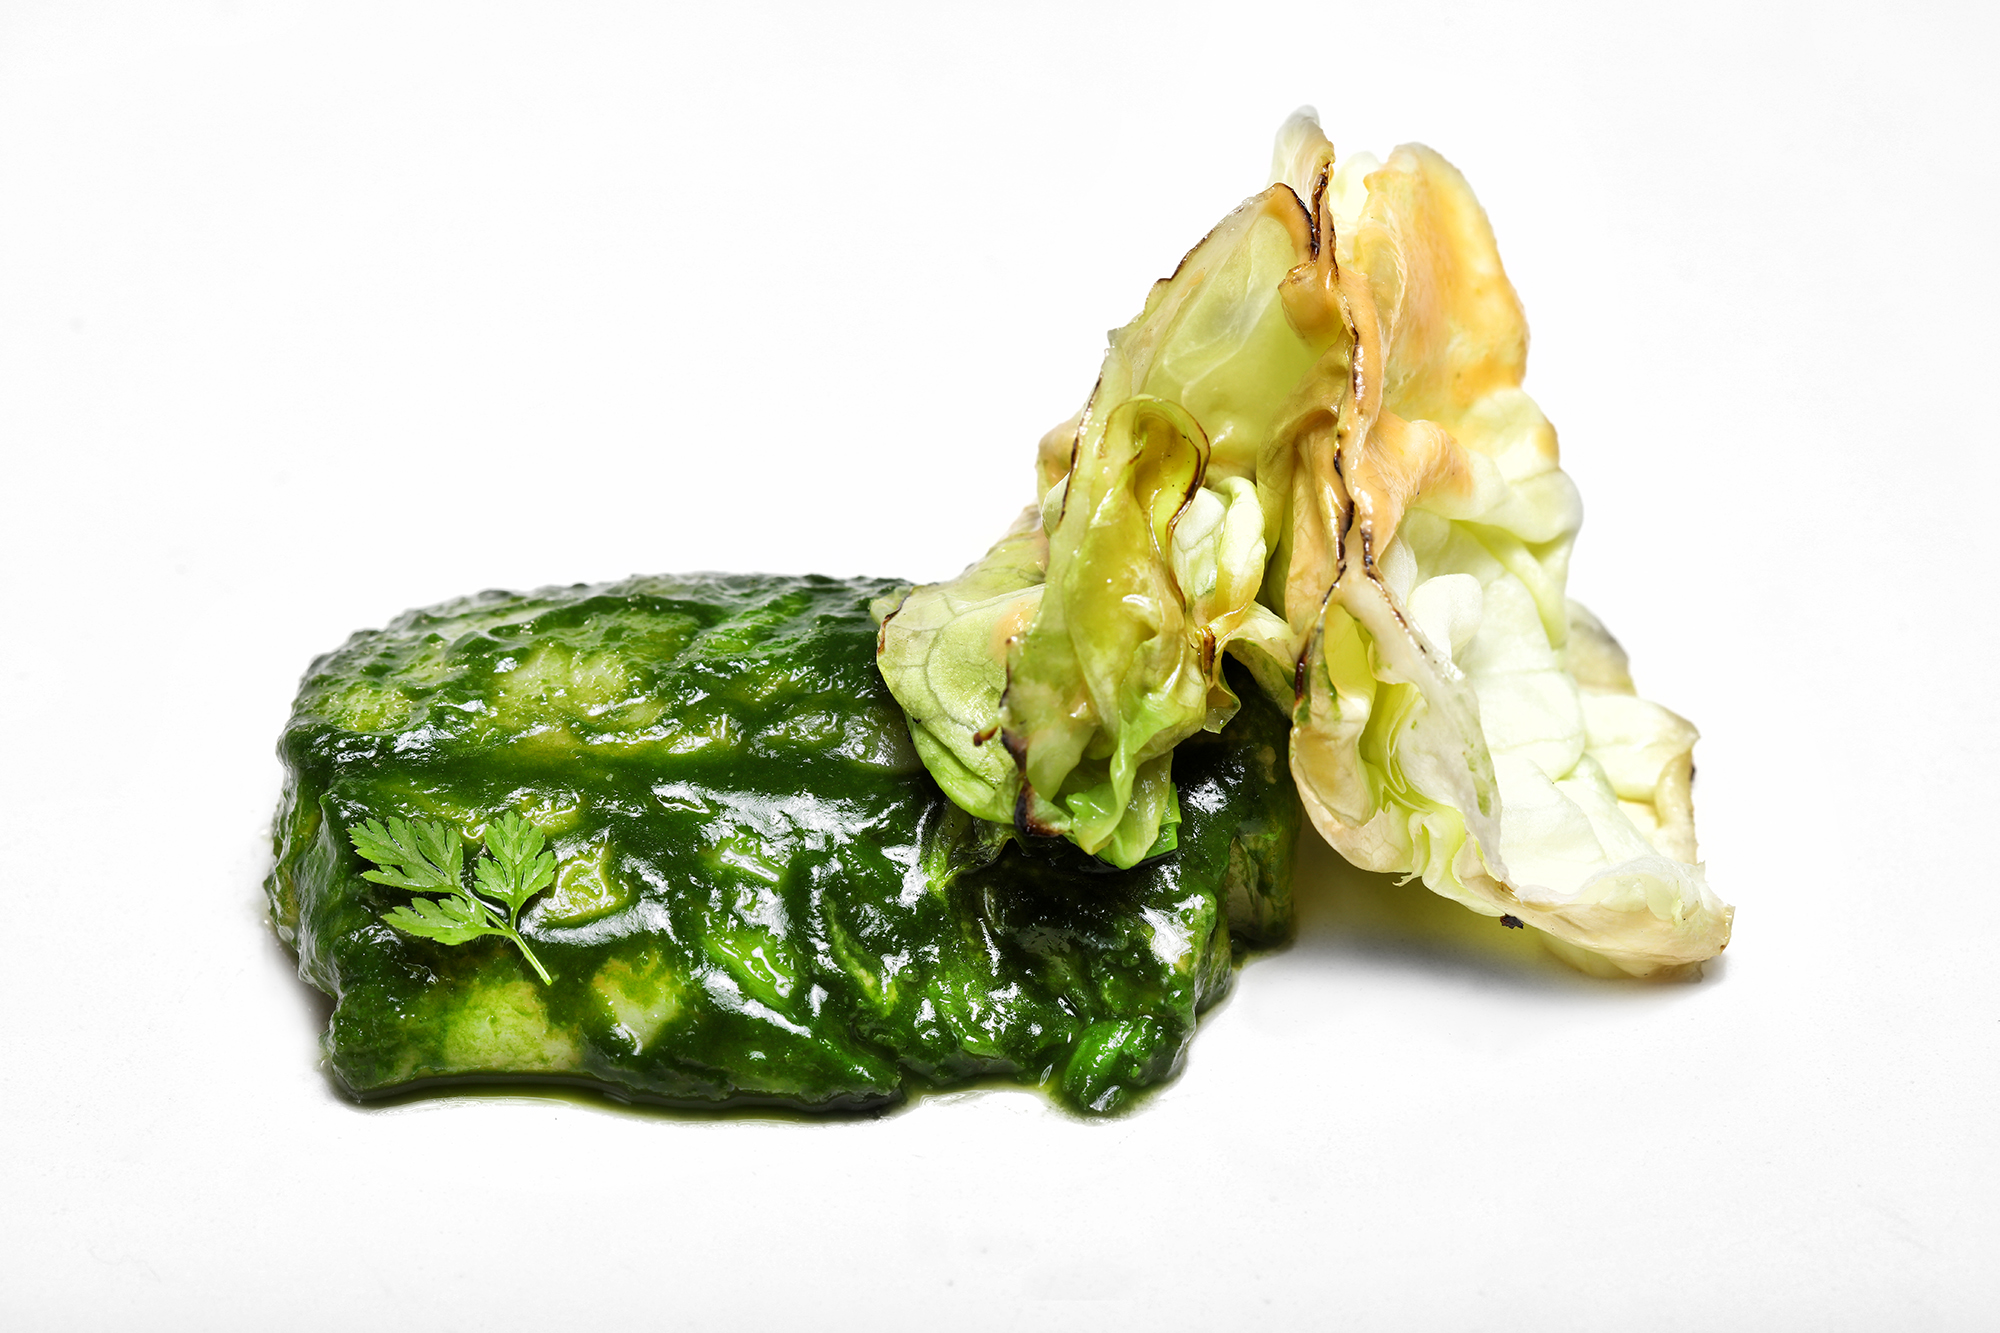 Forkbeard infused in 'revull blanc' lettuce